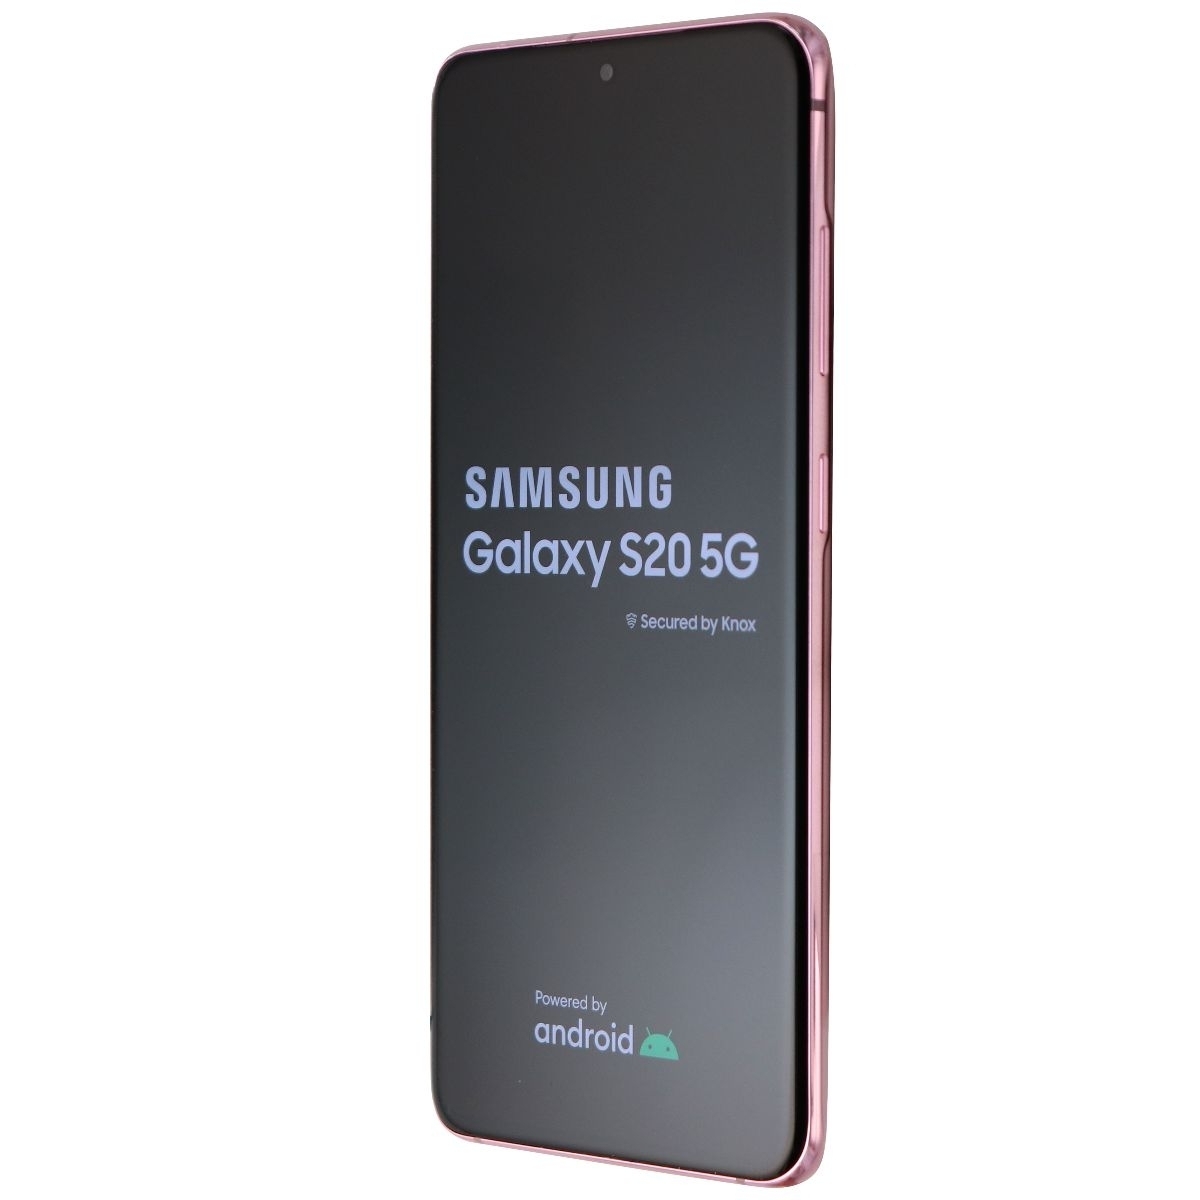 Samsung Galaxy S20 5G UW (6.2-in) (SM-G981V) Xfinity Only - 128GB/Cloud Pink